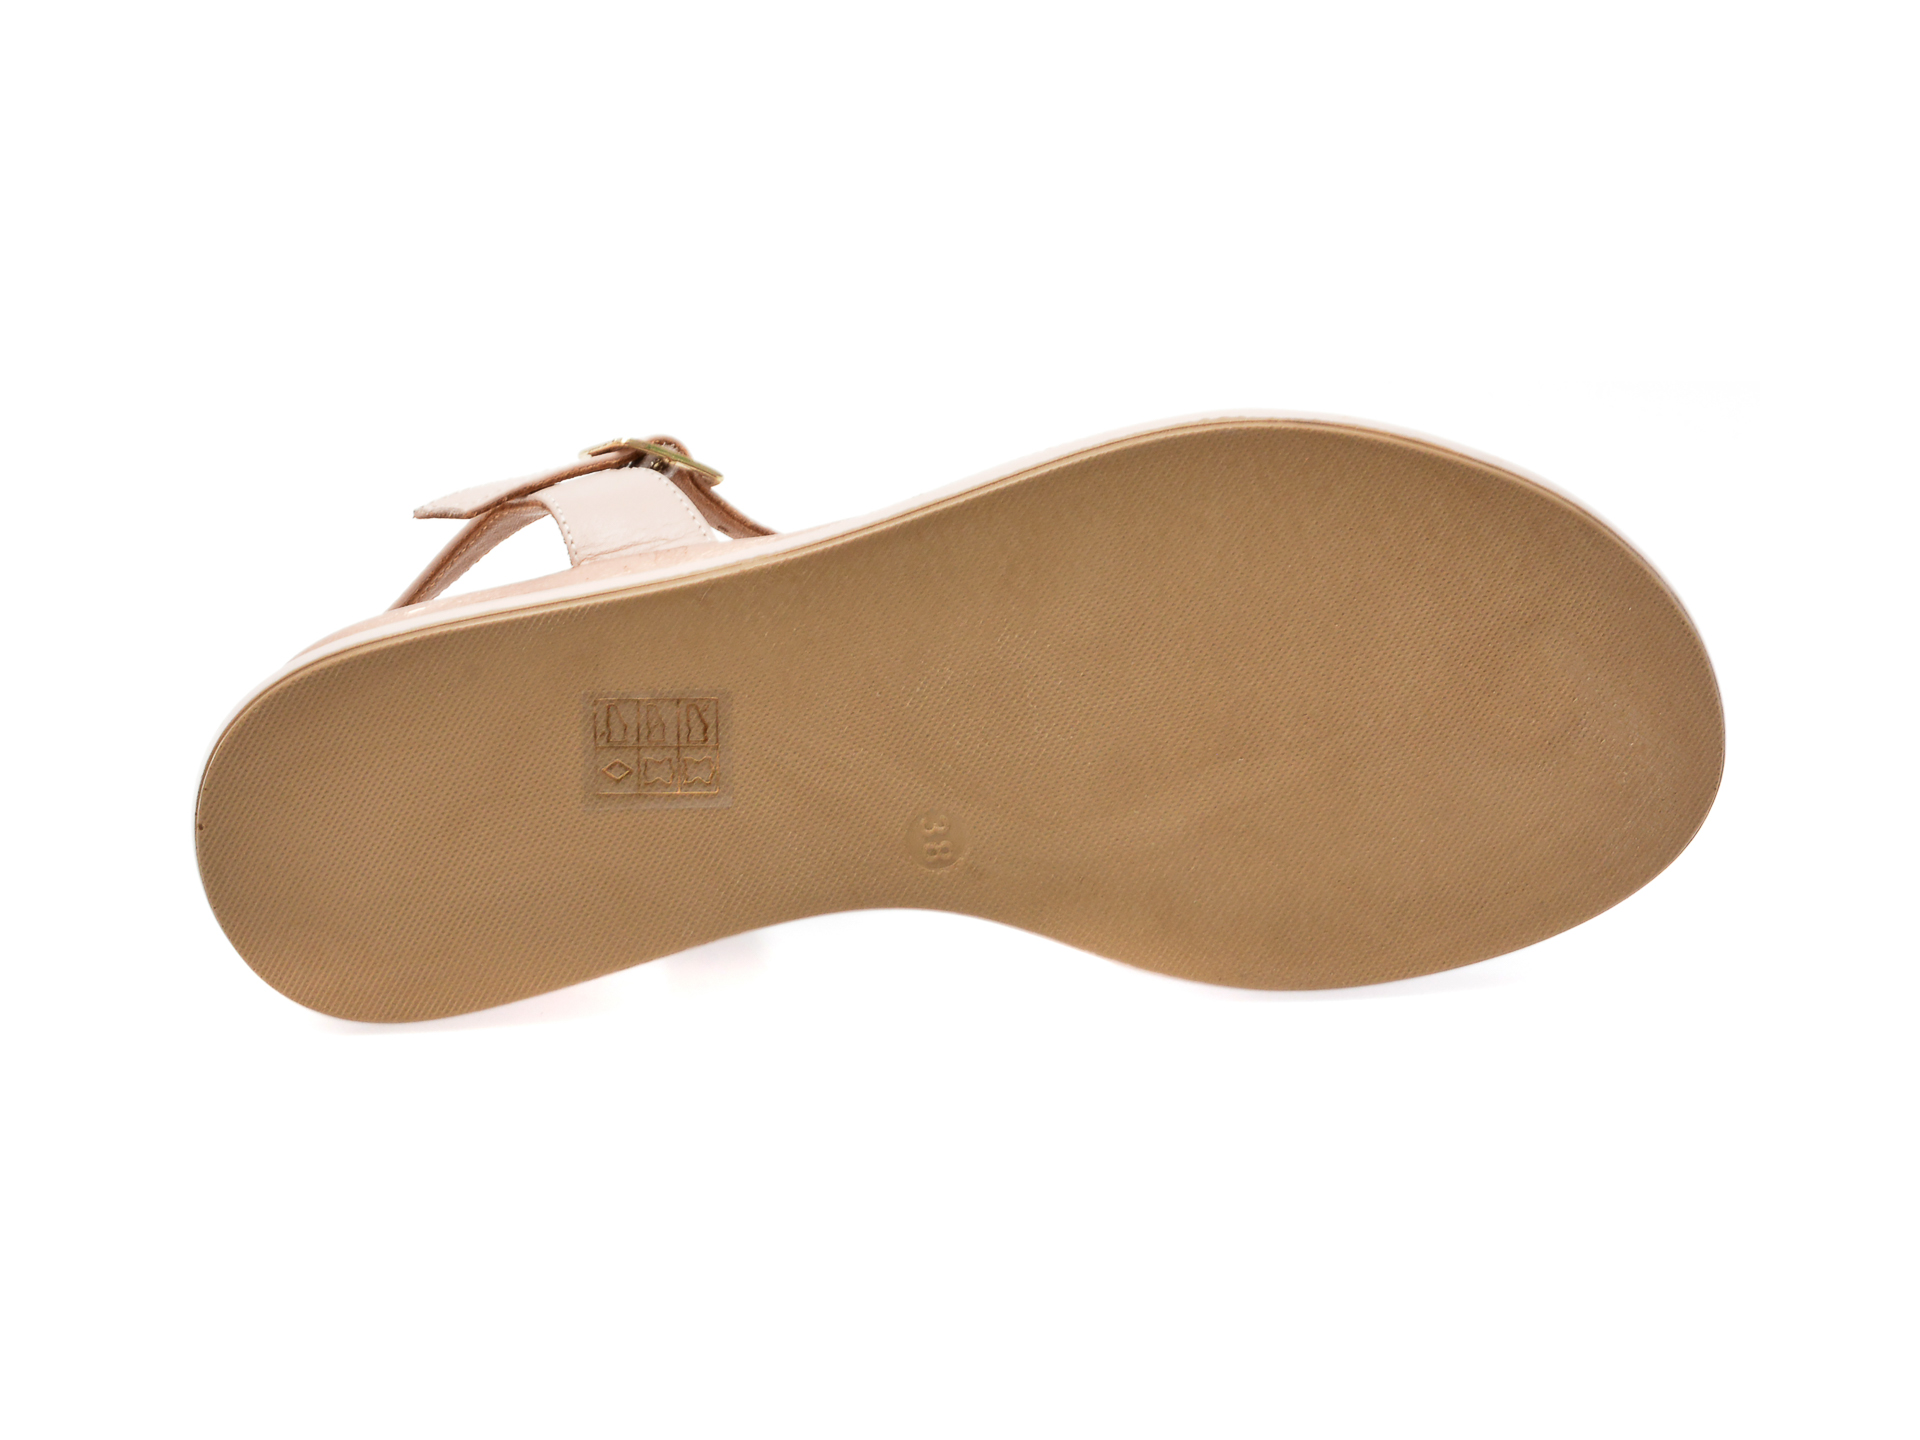 Sandale TANCA nude, 1330704, din piele naturala